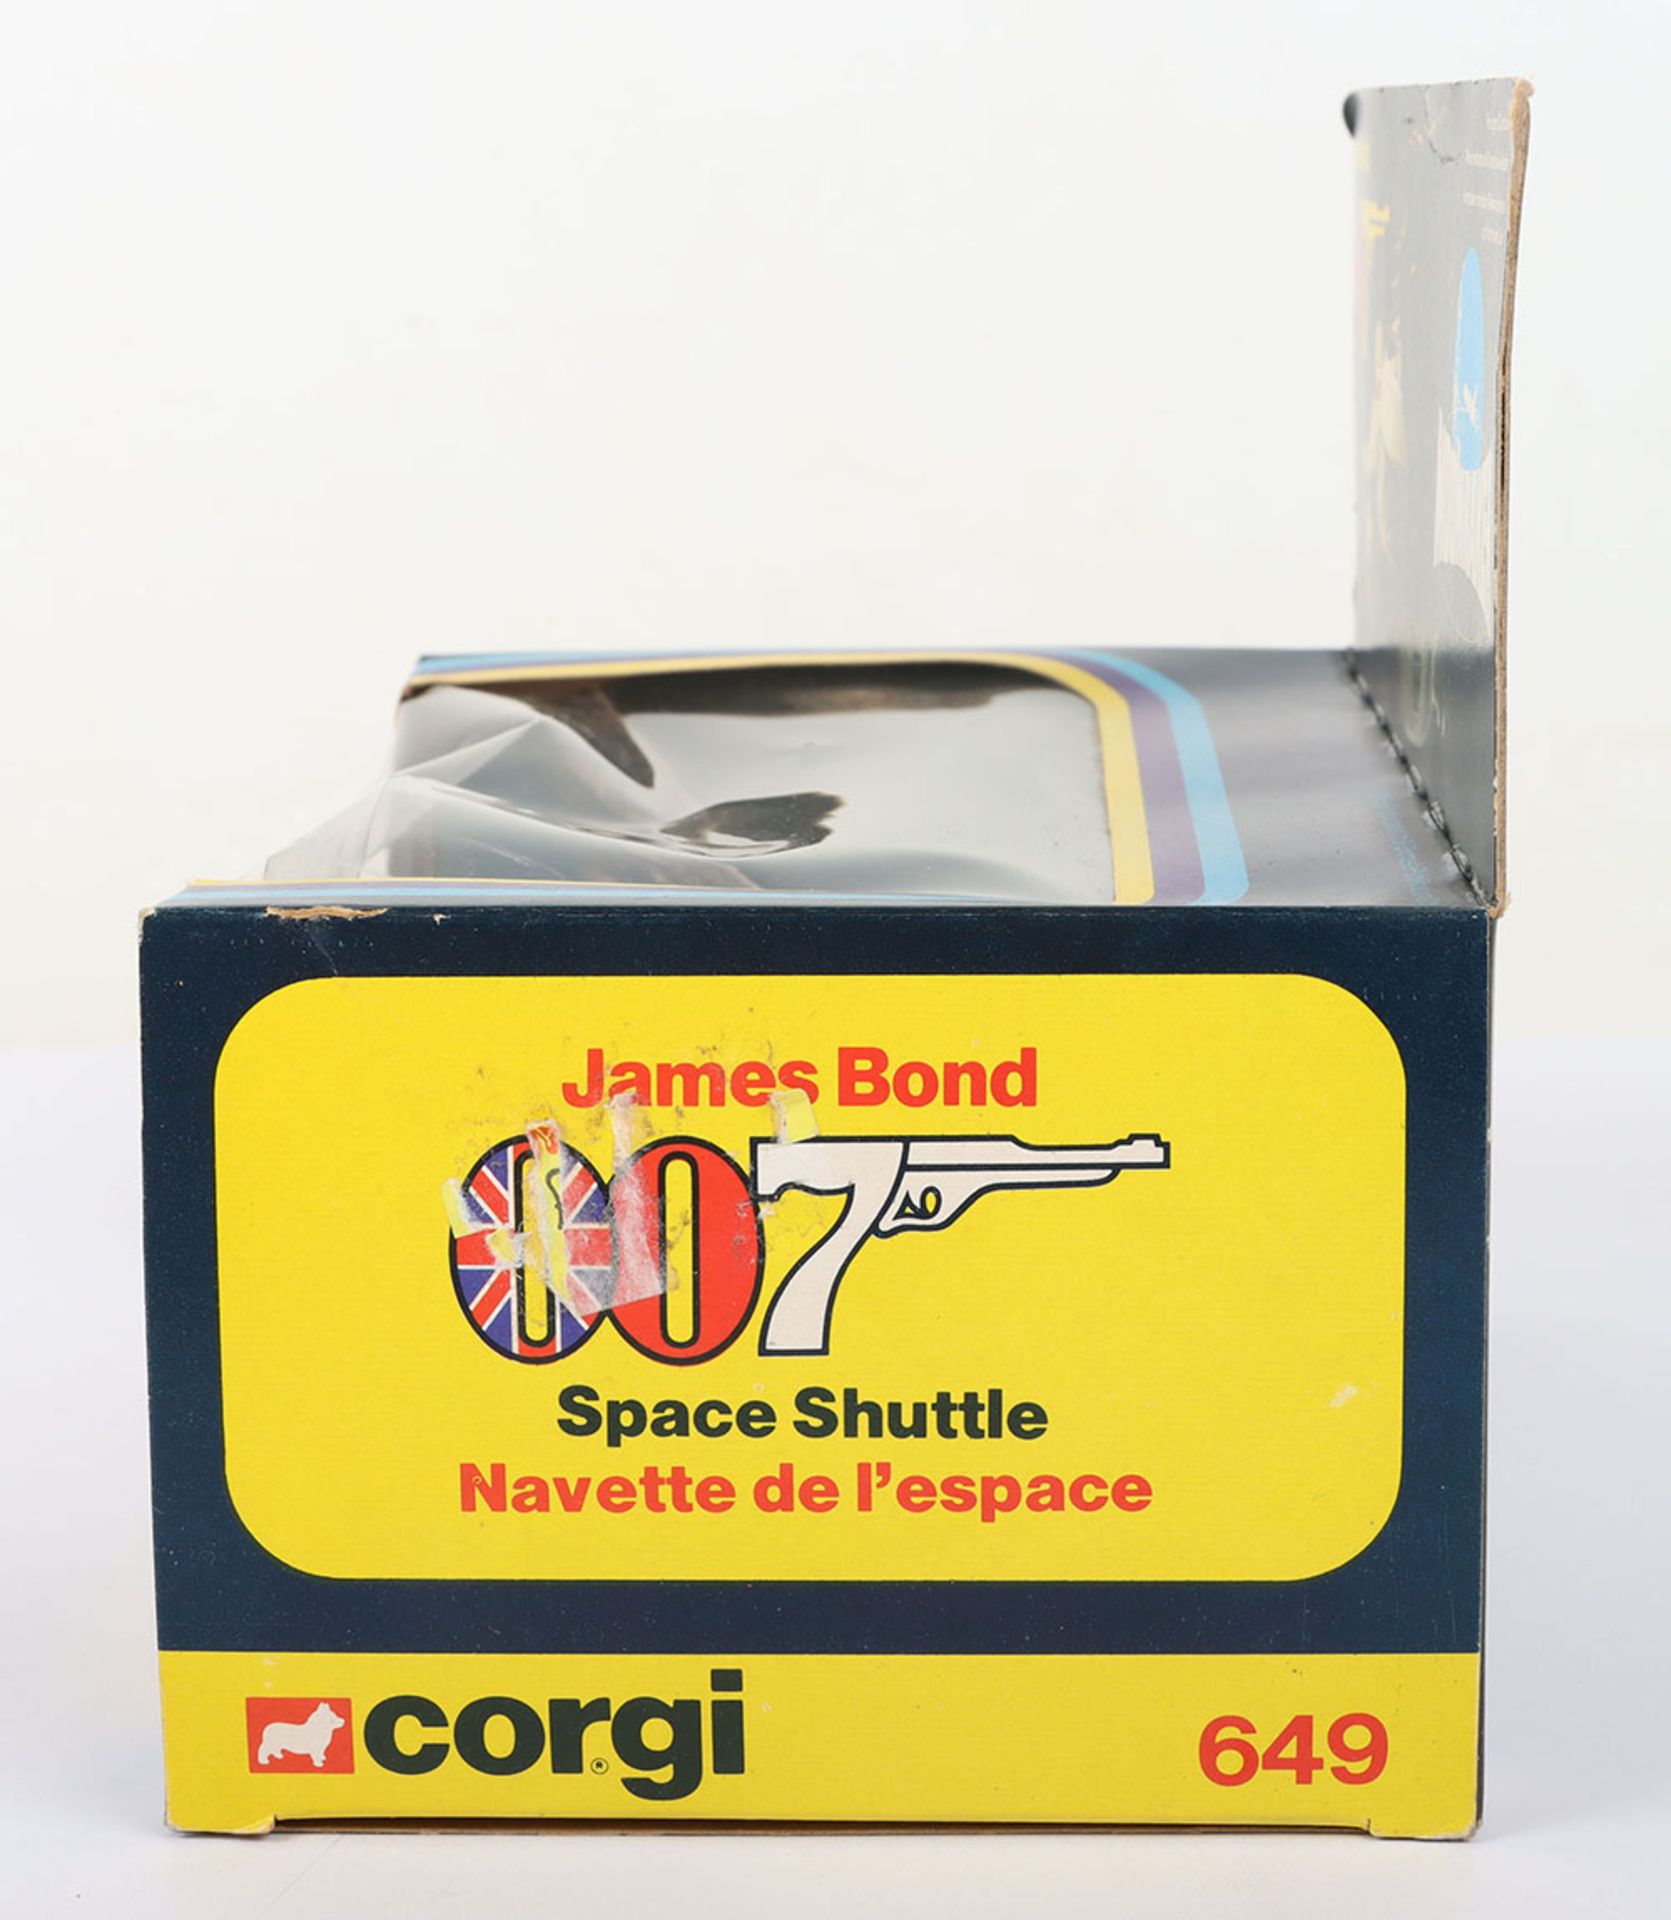 Corgi 649 James Bond Space Shuttle from ‘Moonraker’ - Image 3 of 6